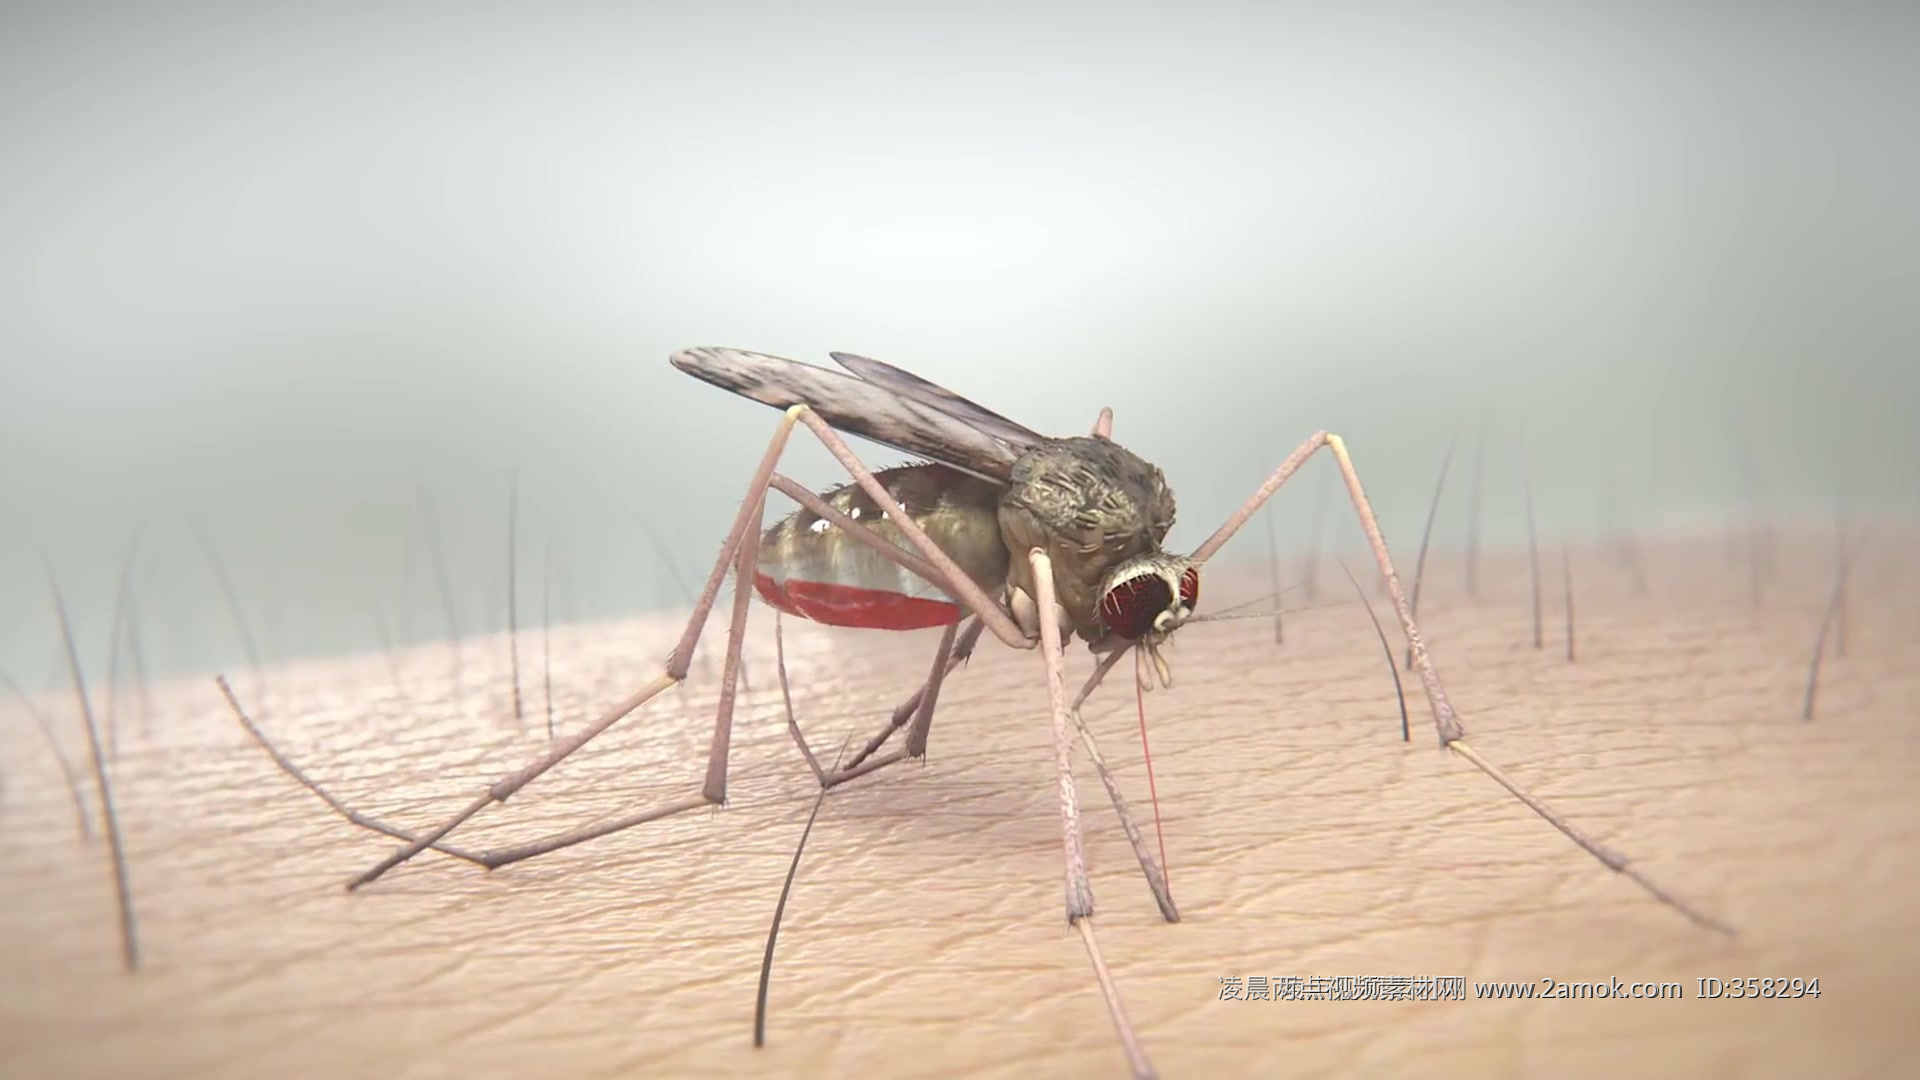 人类皮肤上吸血的蚊子图片下载 - 觅知网